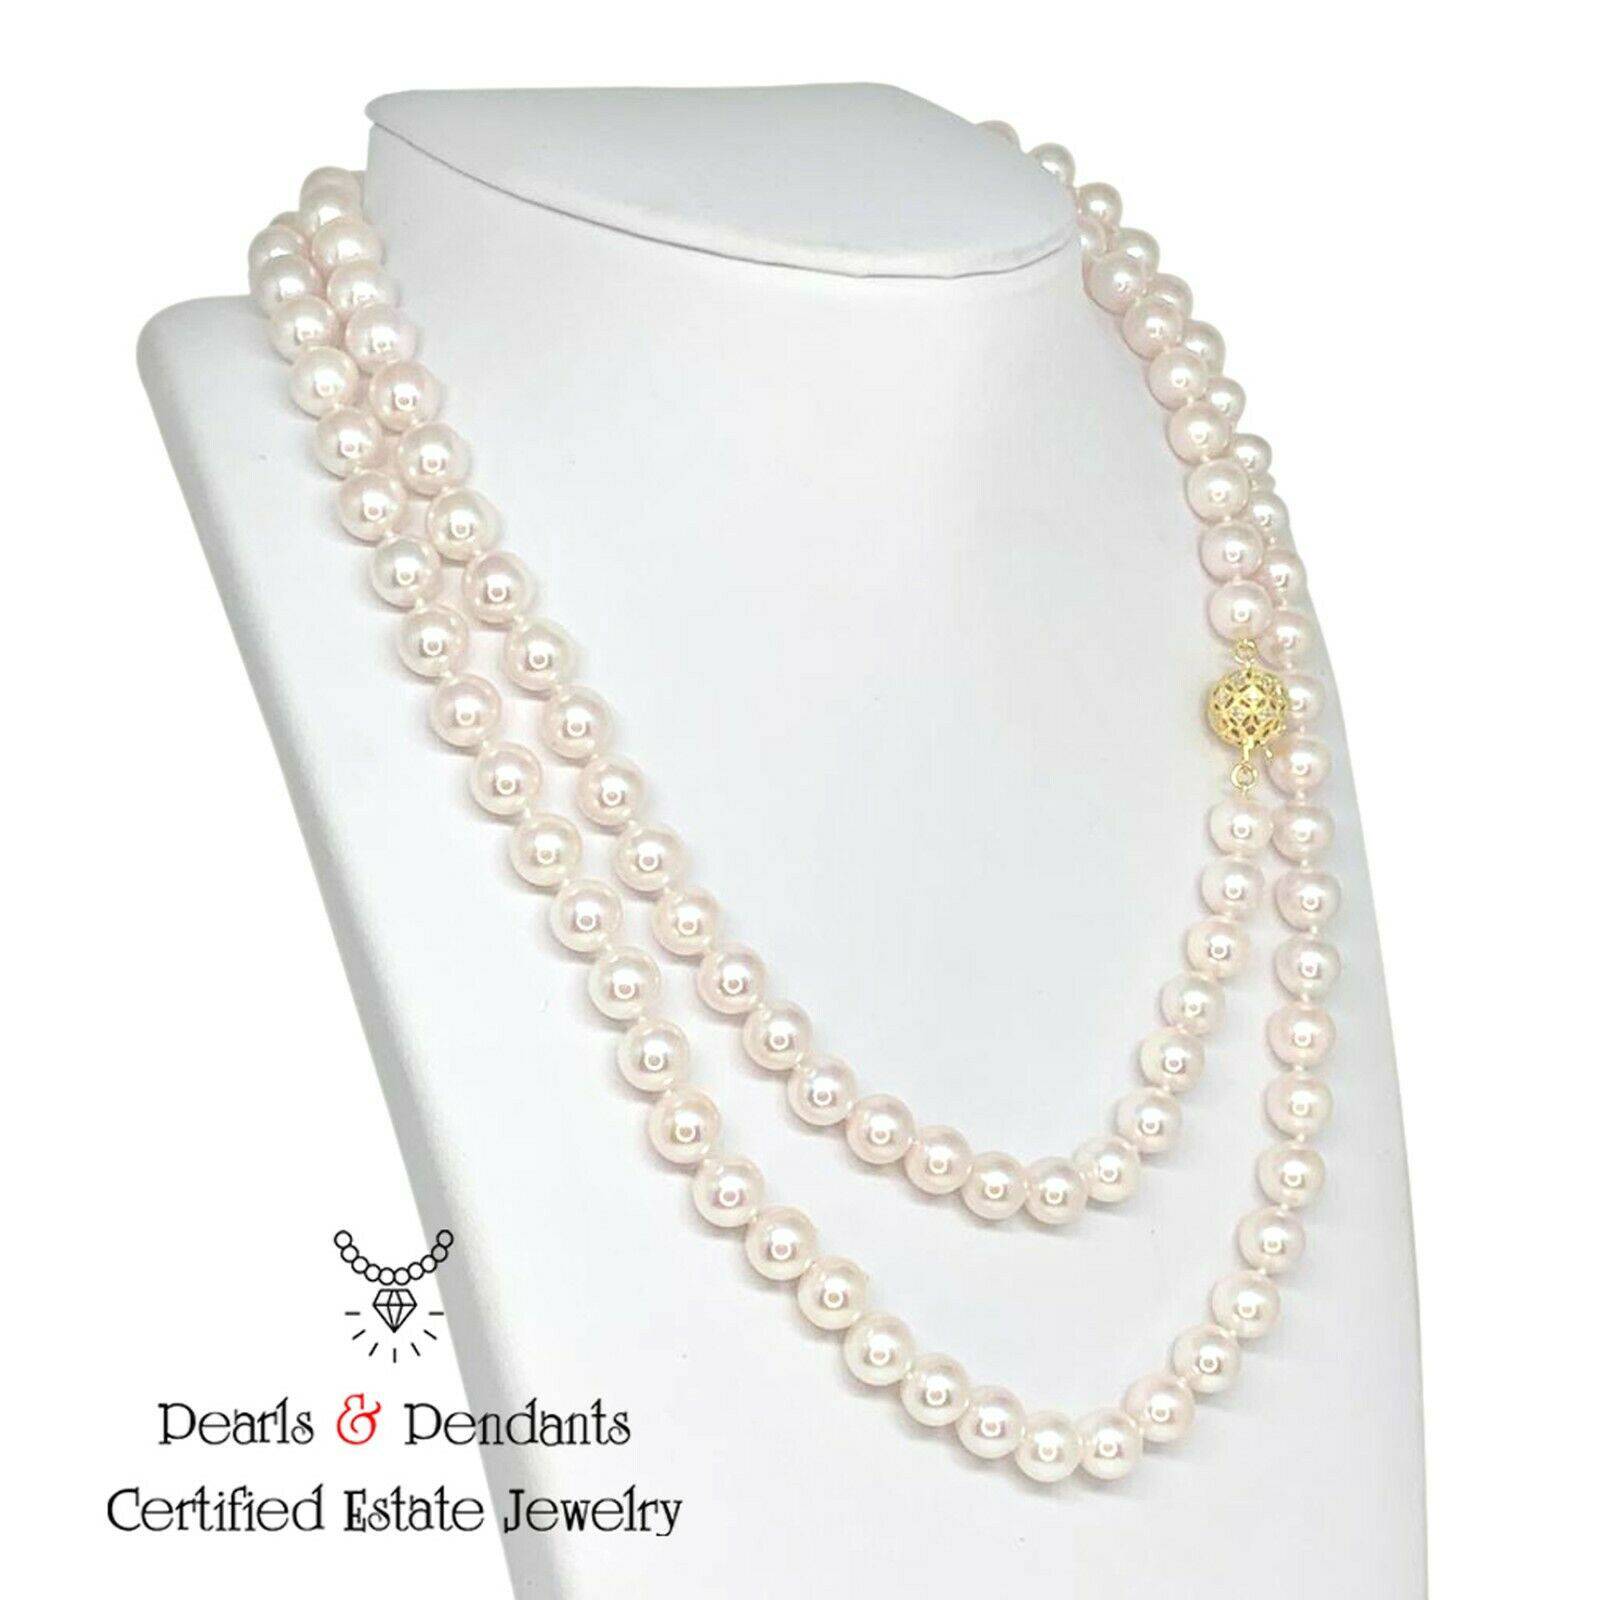 Diamond Akoya Pearl Necklace 14k Gold 8 mm 36 in Certified $9,750 010930 - Certified Fine Jewelry